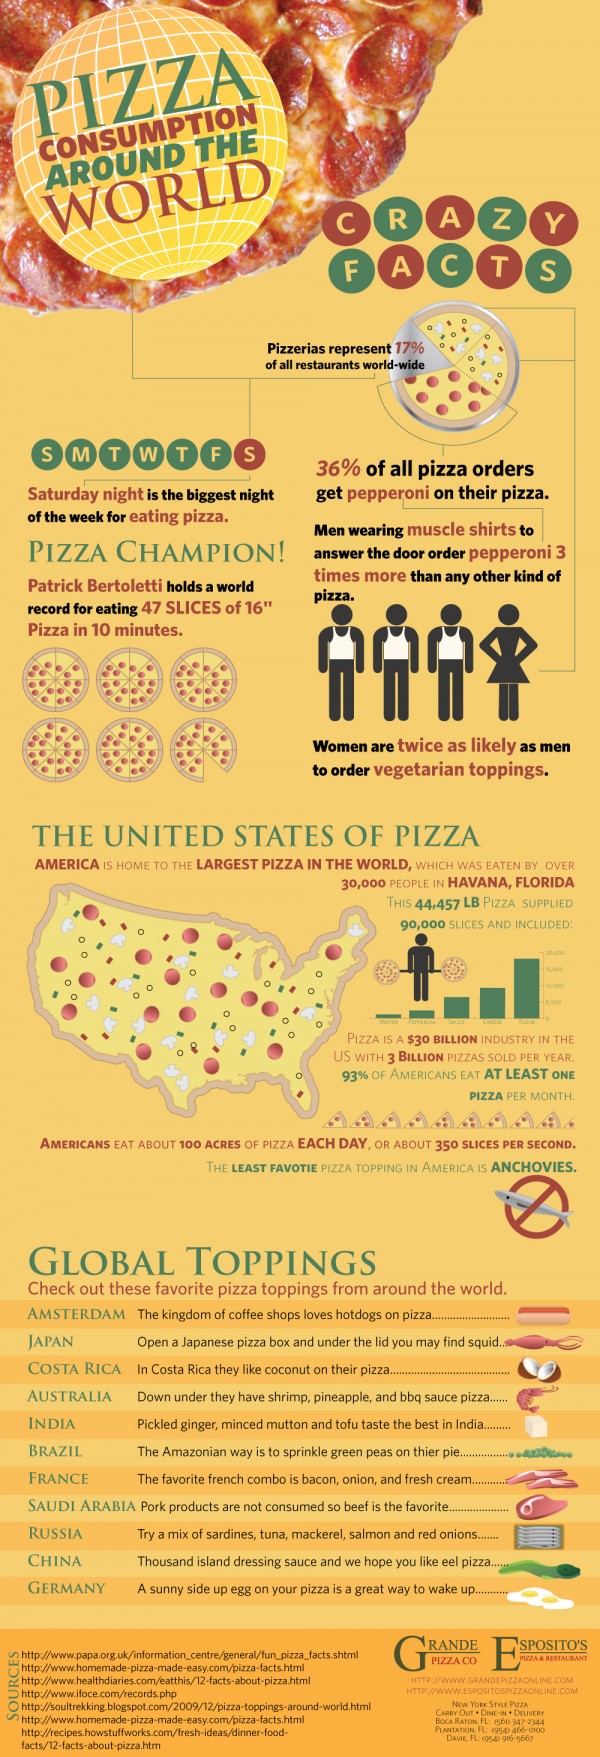 El consumo de pizza alrededor del mundo [Infografía] 1